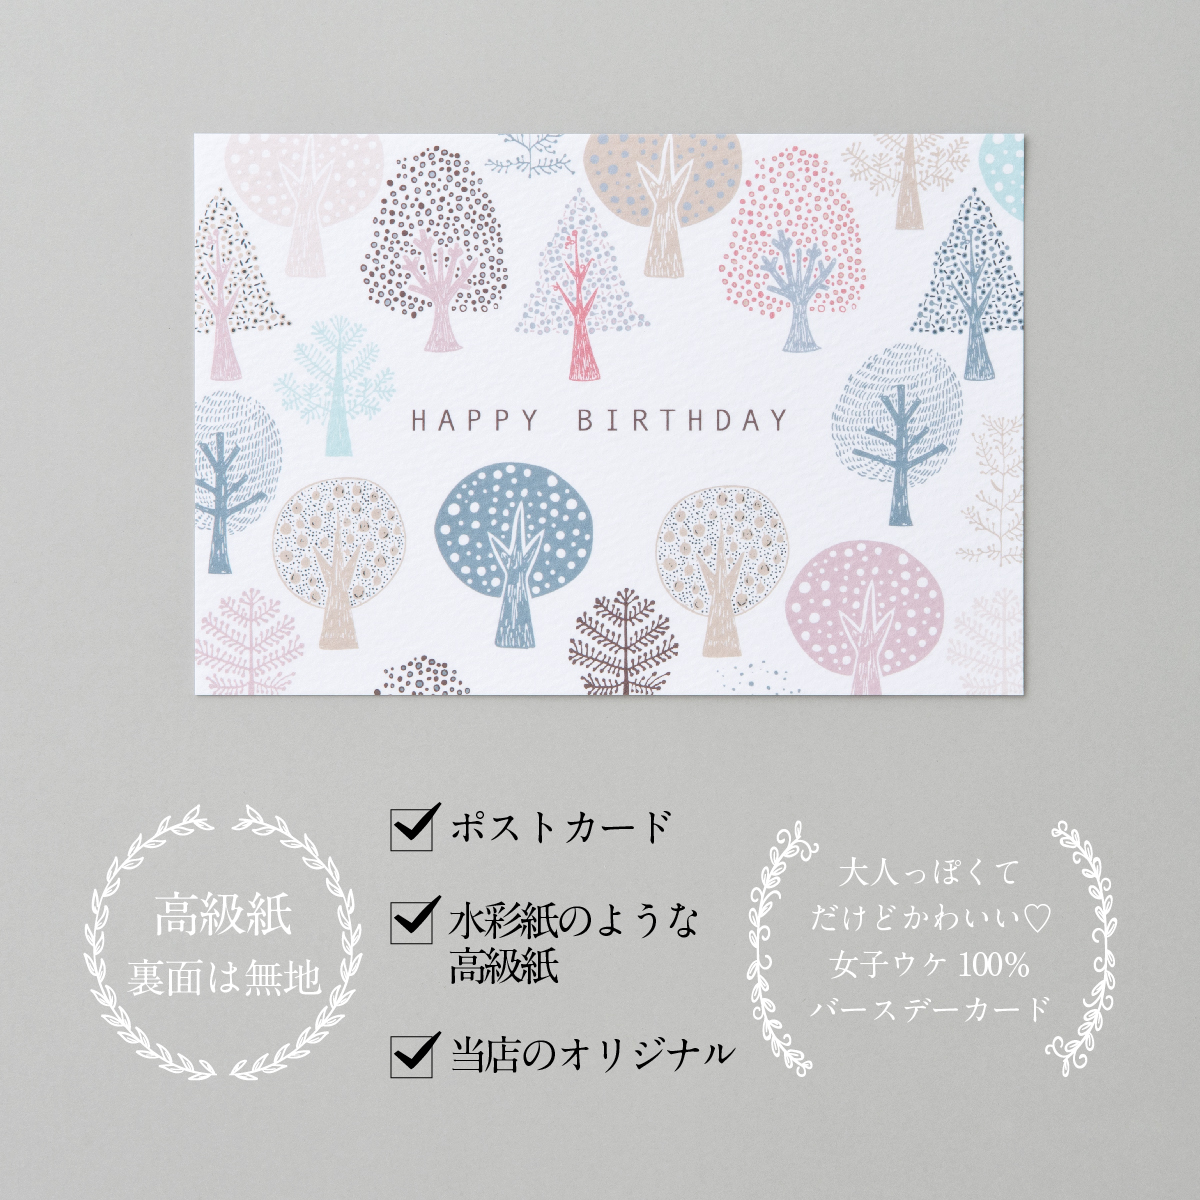 可愛いイラストのバースデーカード 可愛いデザインが人気です バースデーカード 森ピンク Birthday Card グリーティングカード おしゃれ かわいい 誕生日カード 感謝 21a W新作 送料無料 メッセージカード ギフト プレゼント